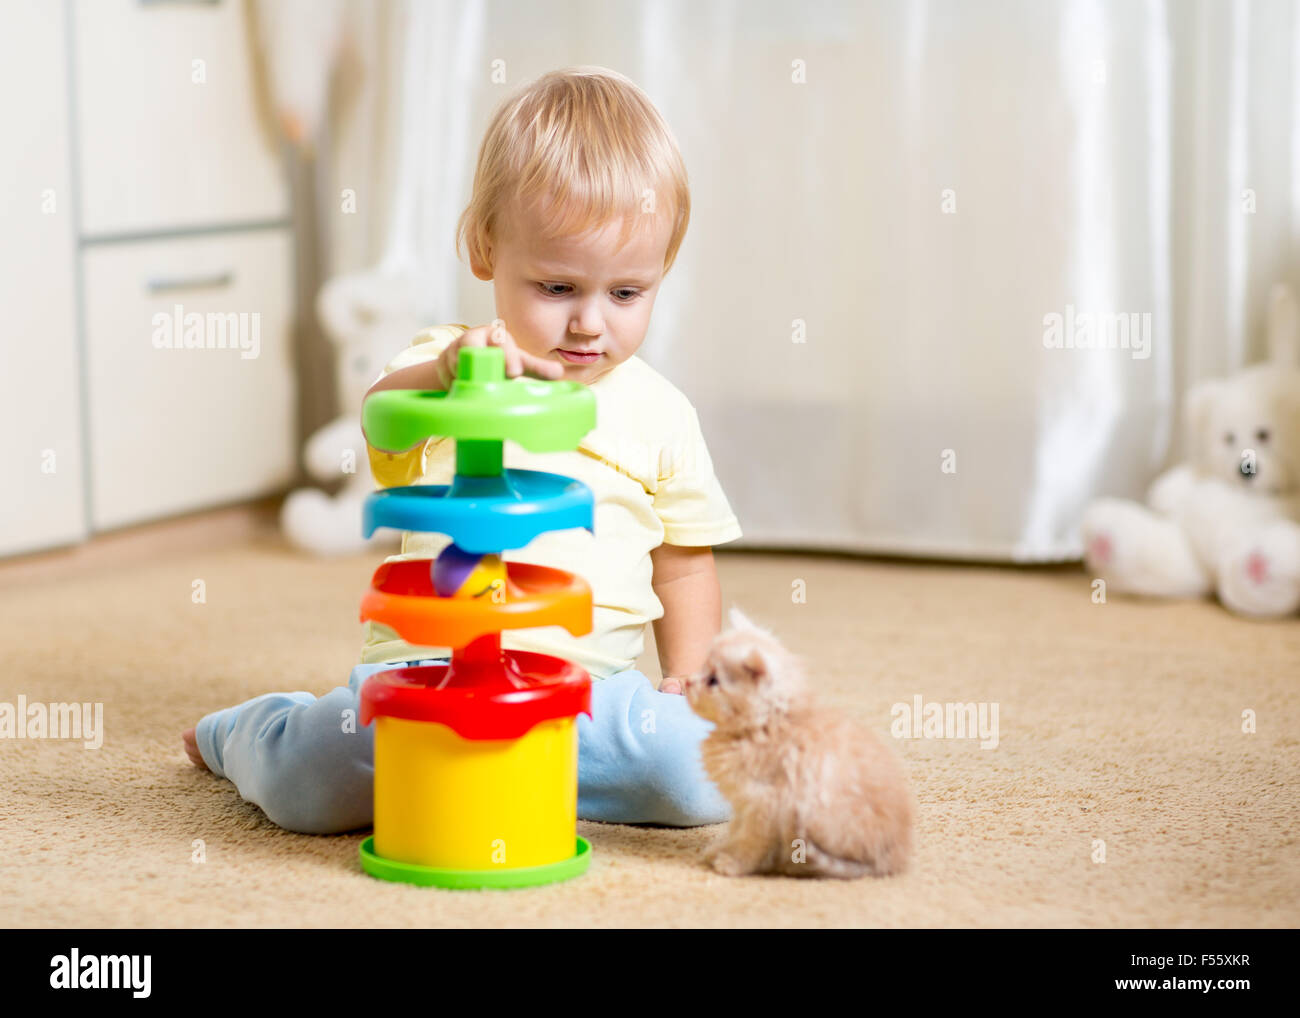 Garçon enfant joue avec un chaton, un intérieur Banque D'Images